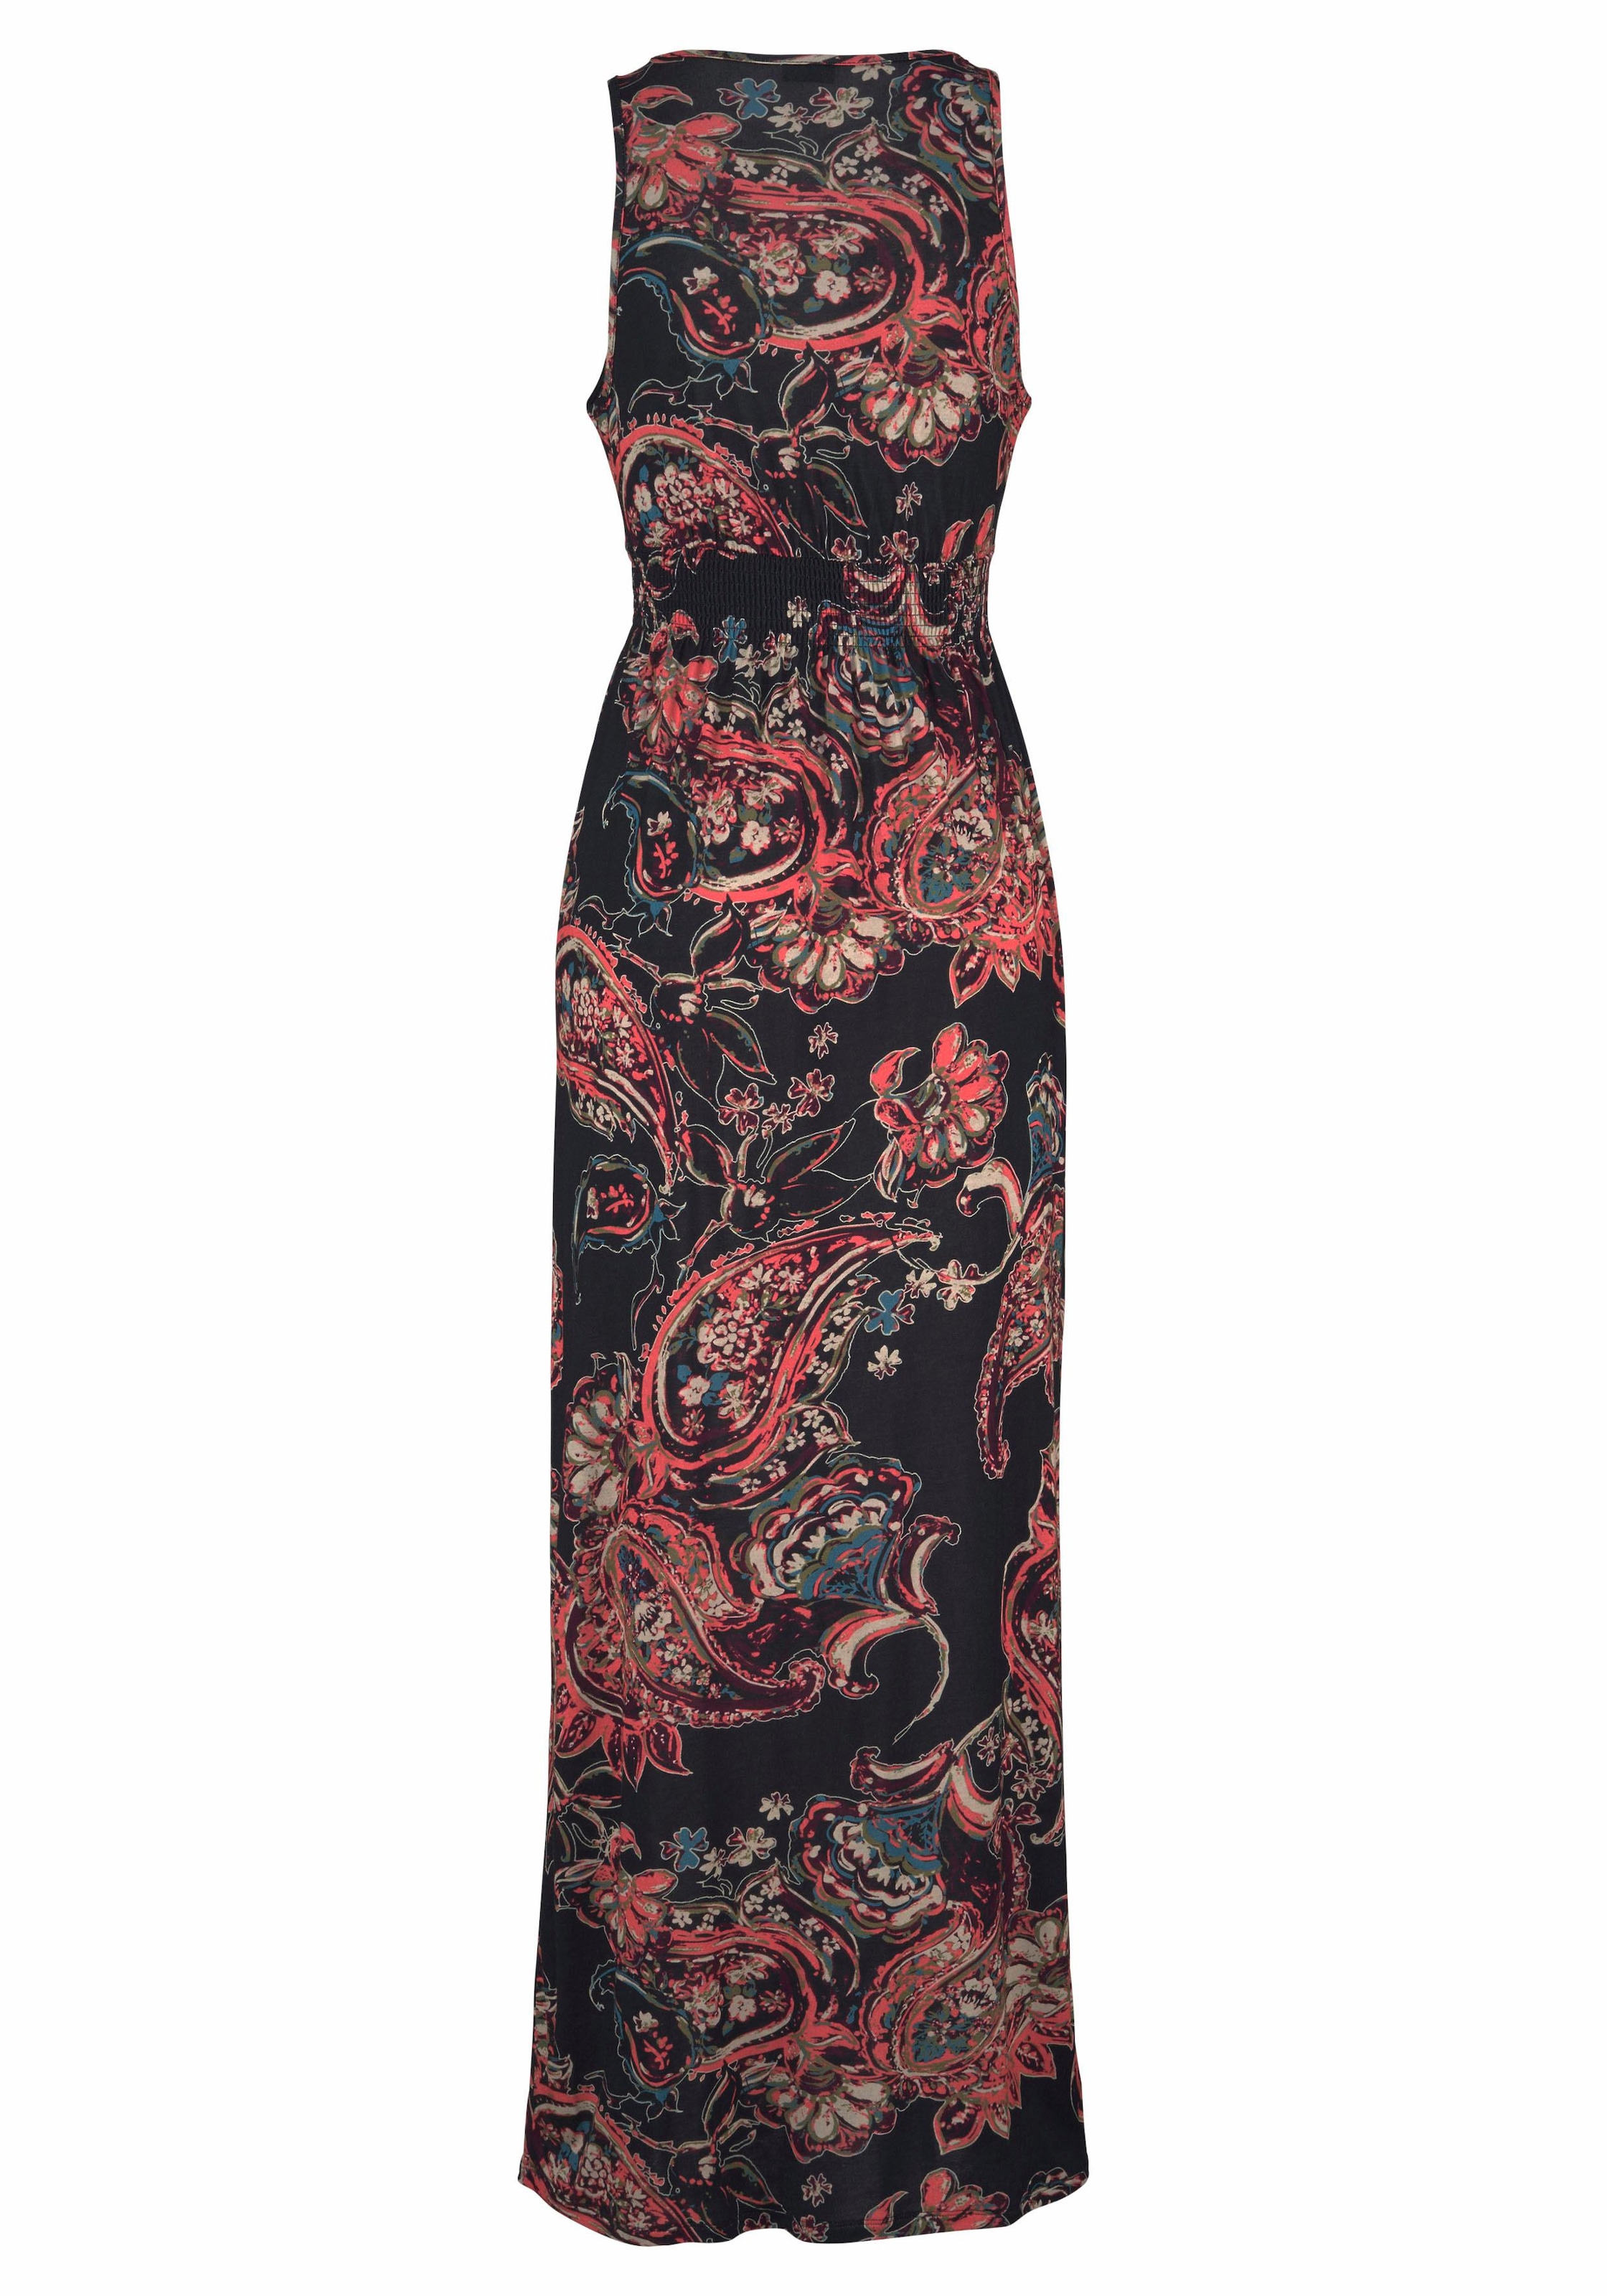 LASCANA Maxikleid, mit Paisleydruck und verstellbarem Ausschnitt, Sommerkleid